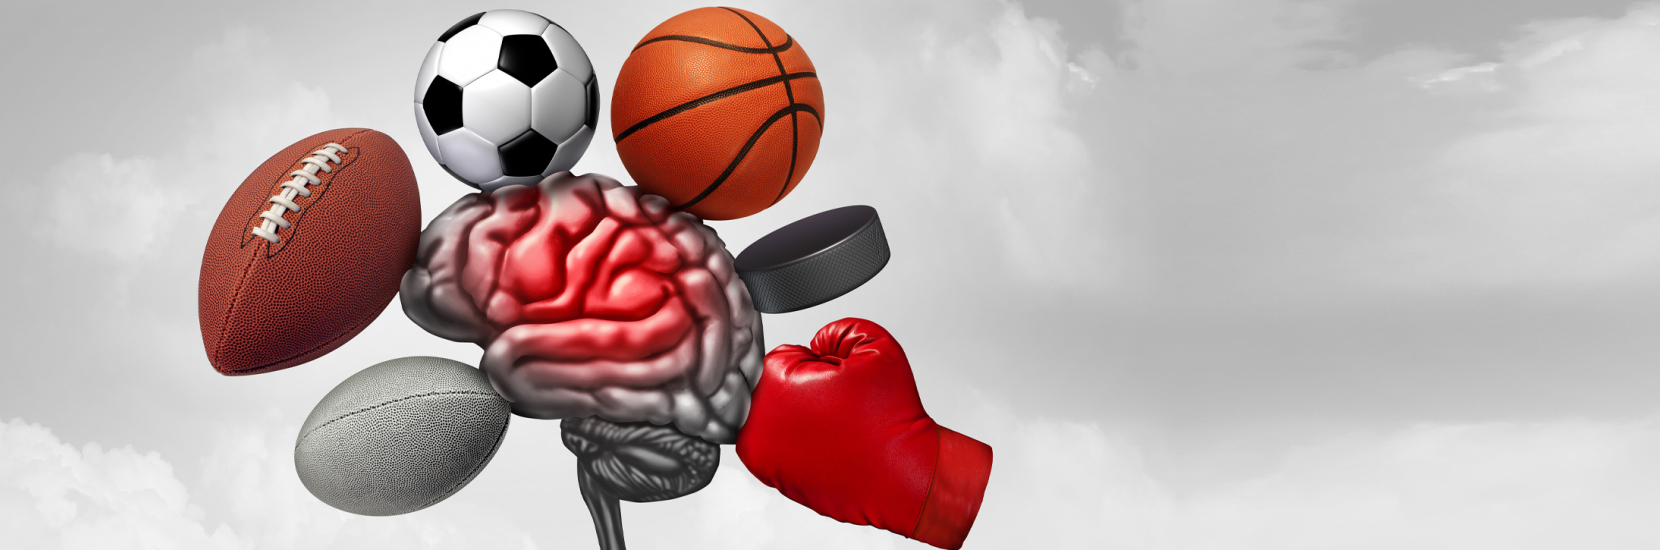 La commotion cérébrale dans le sport